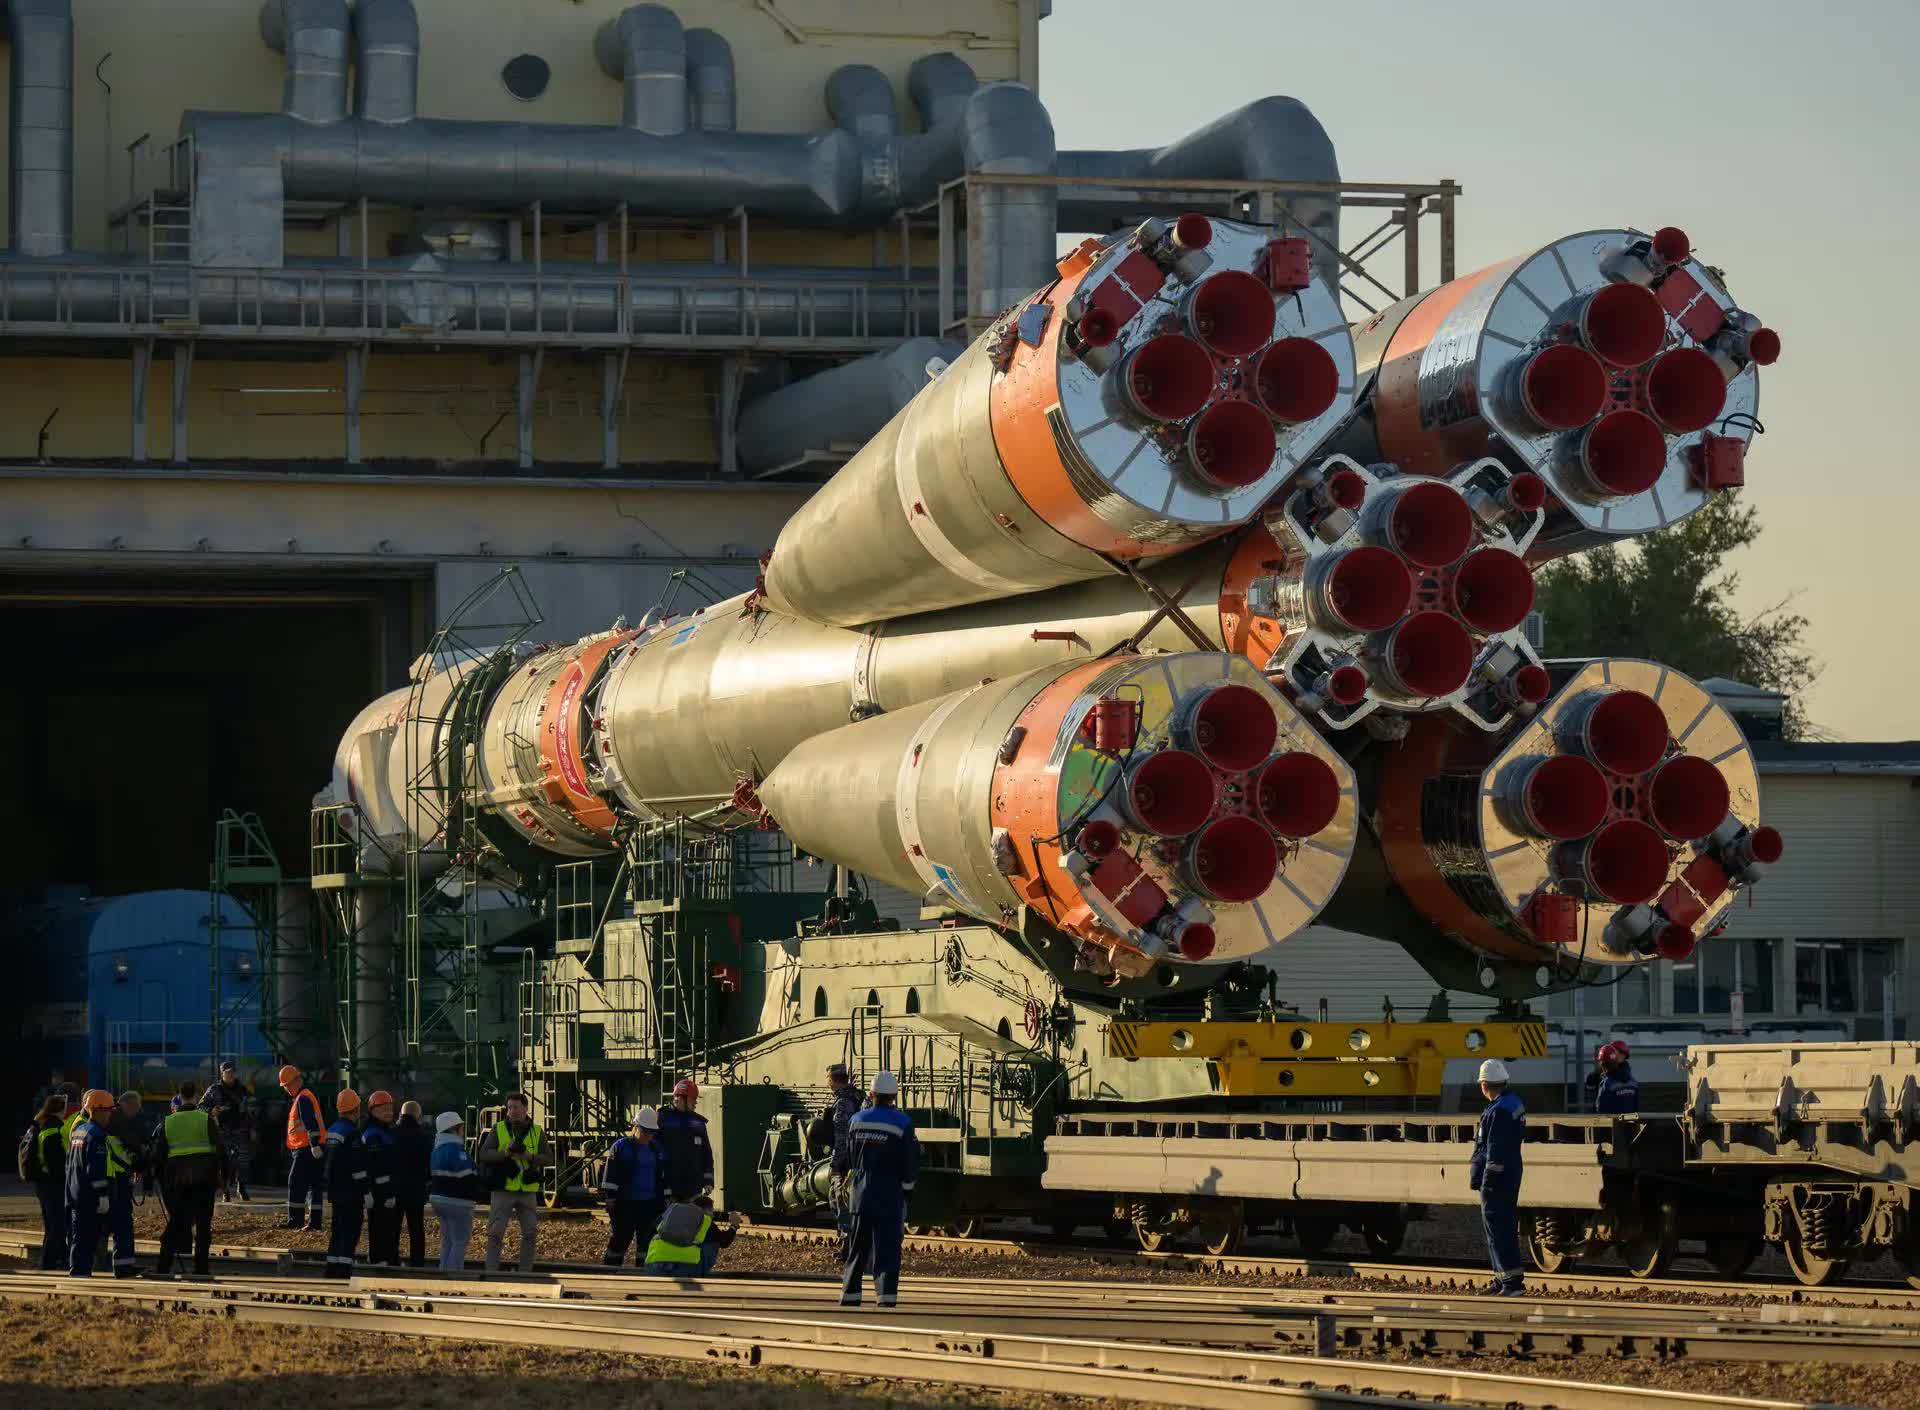 Bộ ảnh quyền lực: Nga nâng tên lửa Soyuz lên bệ, sắp có chuyến bay lịch sử - Ảnh 1.